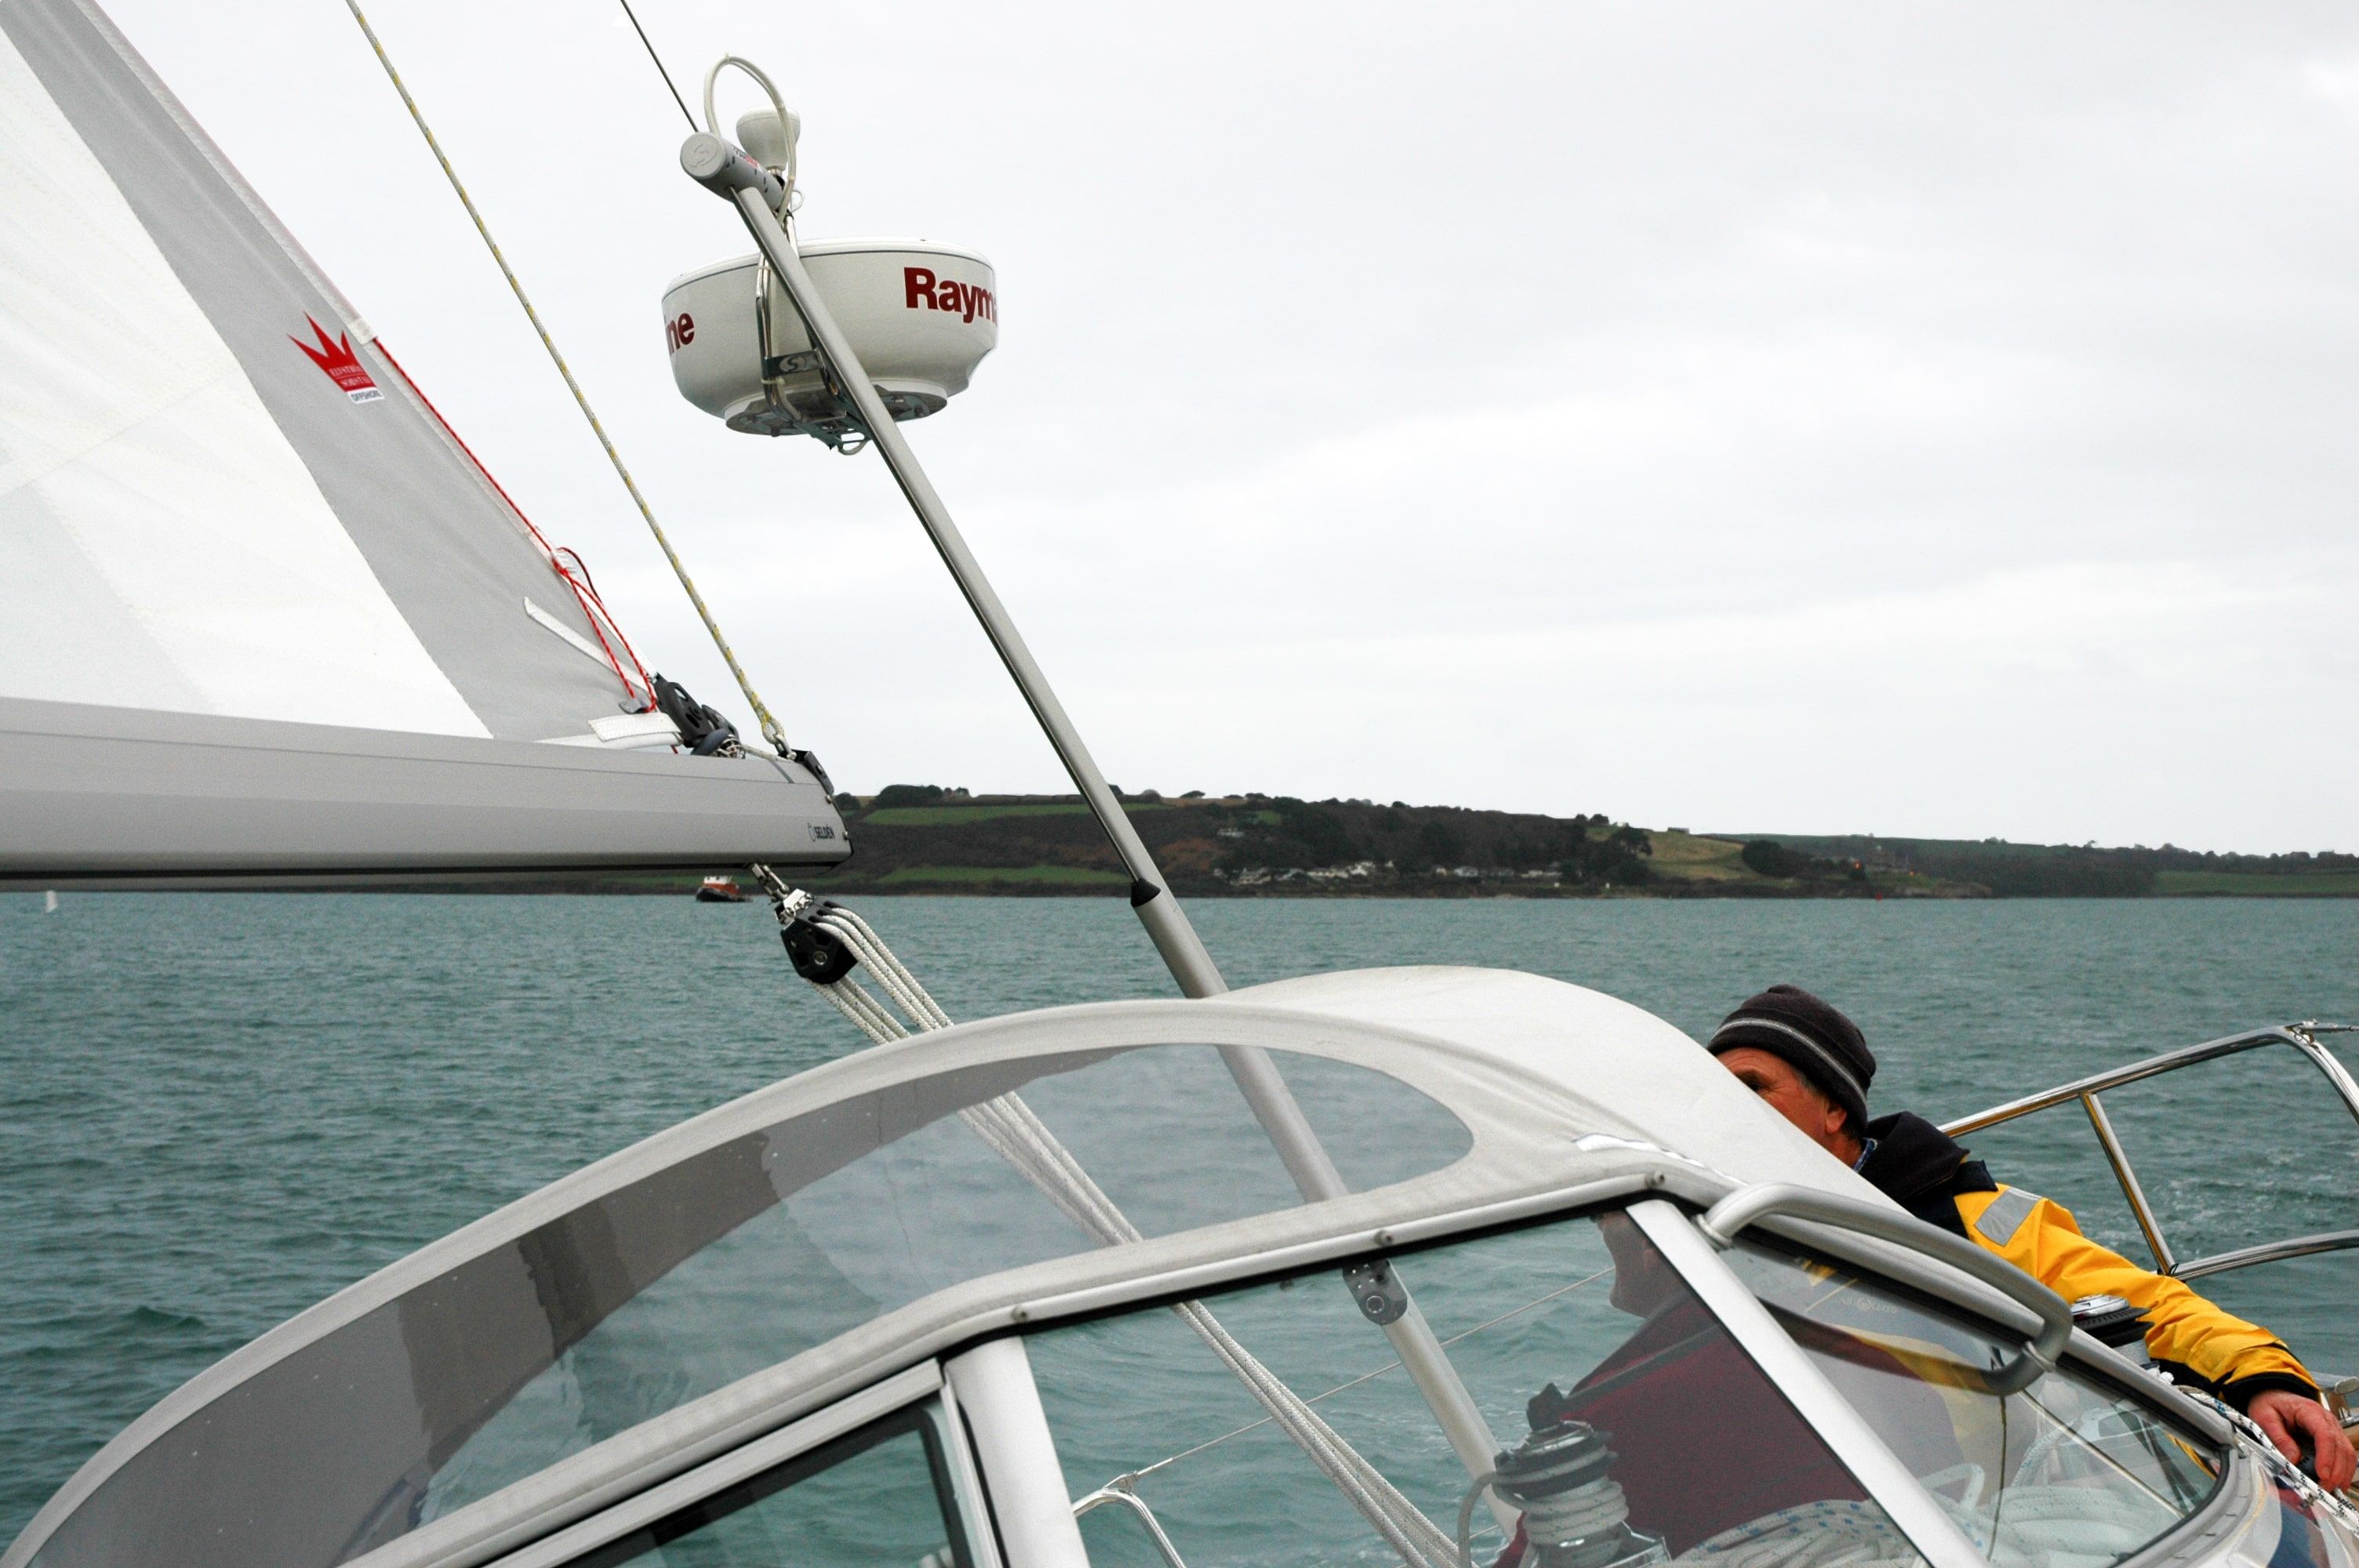 radar mount on sailboat